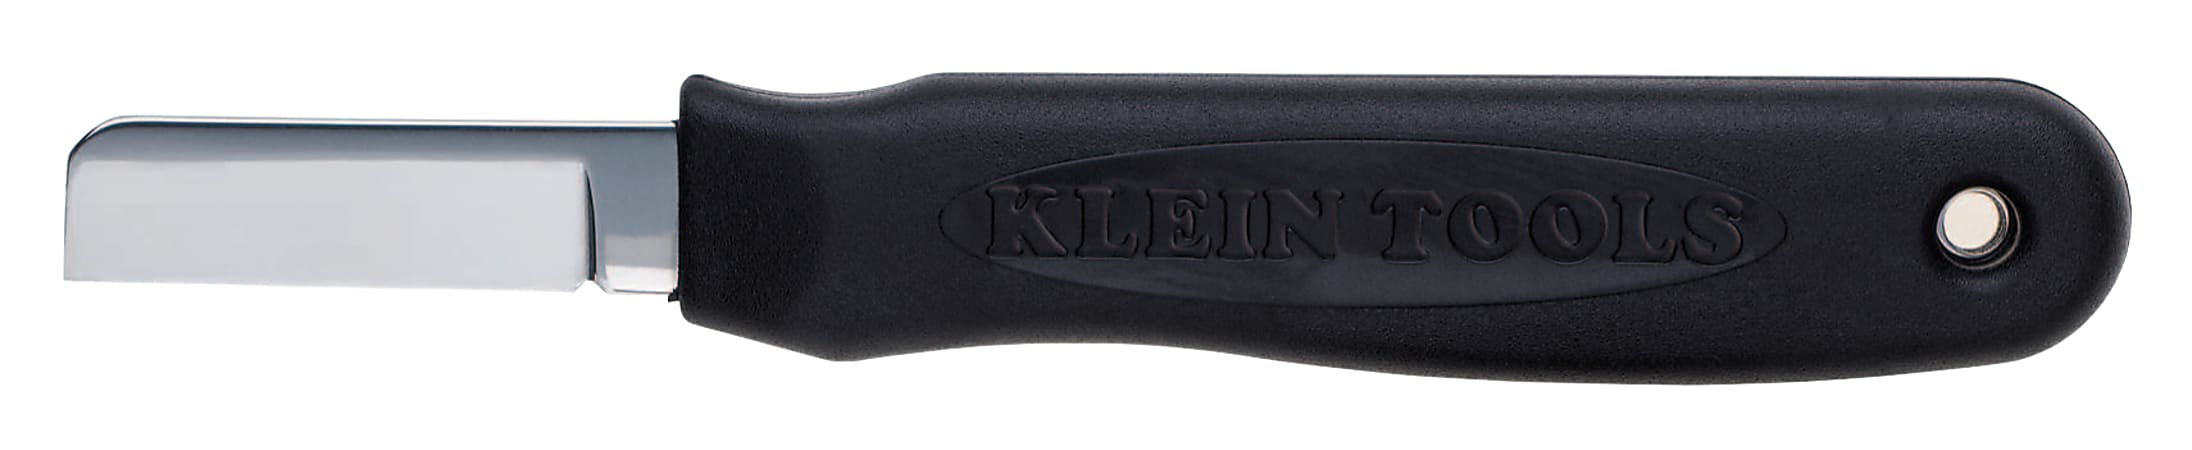 Cable-Slicer Knives, 6 1/4 in, Steel Blade, Black